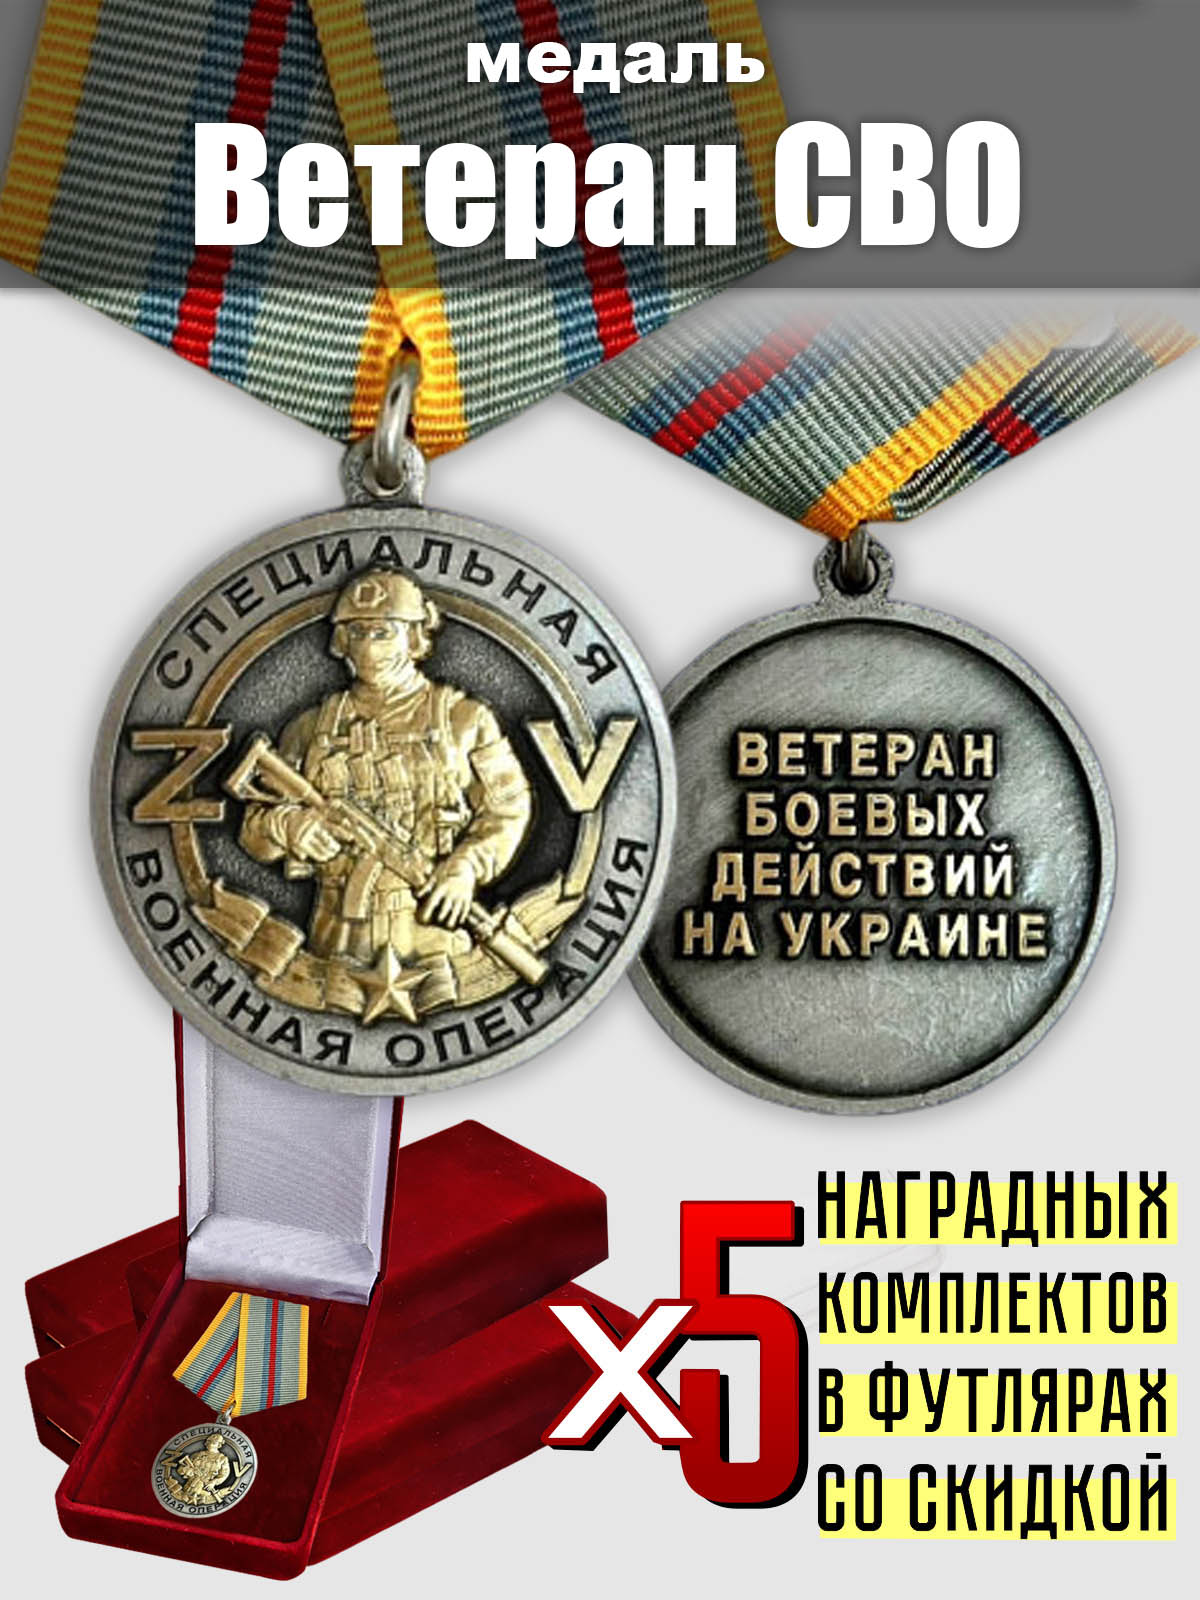 Набор медалей для ветеранов СВО (5 шт.)